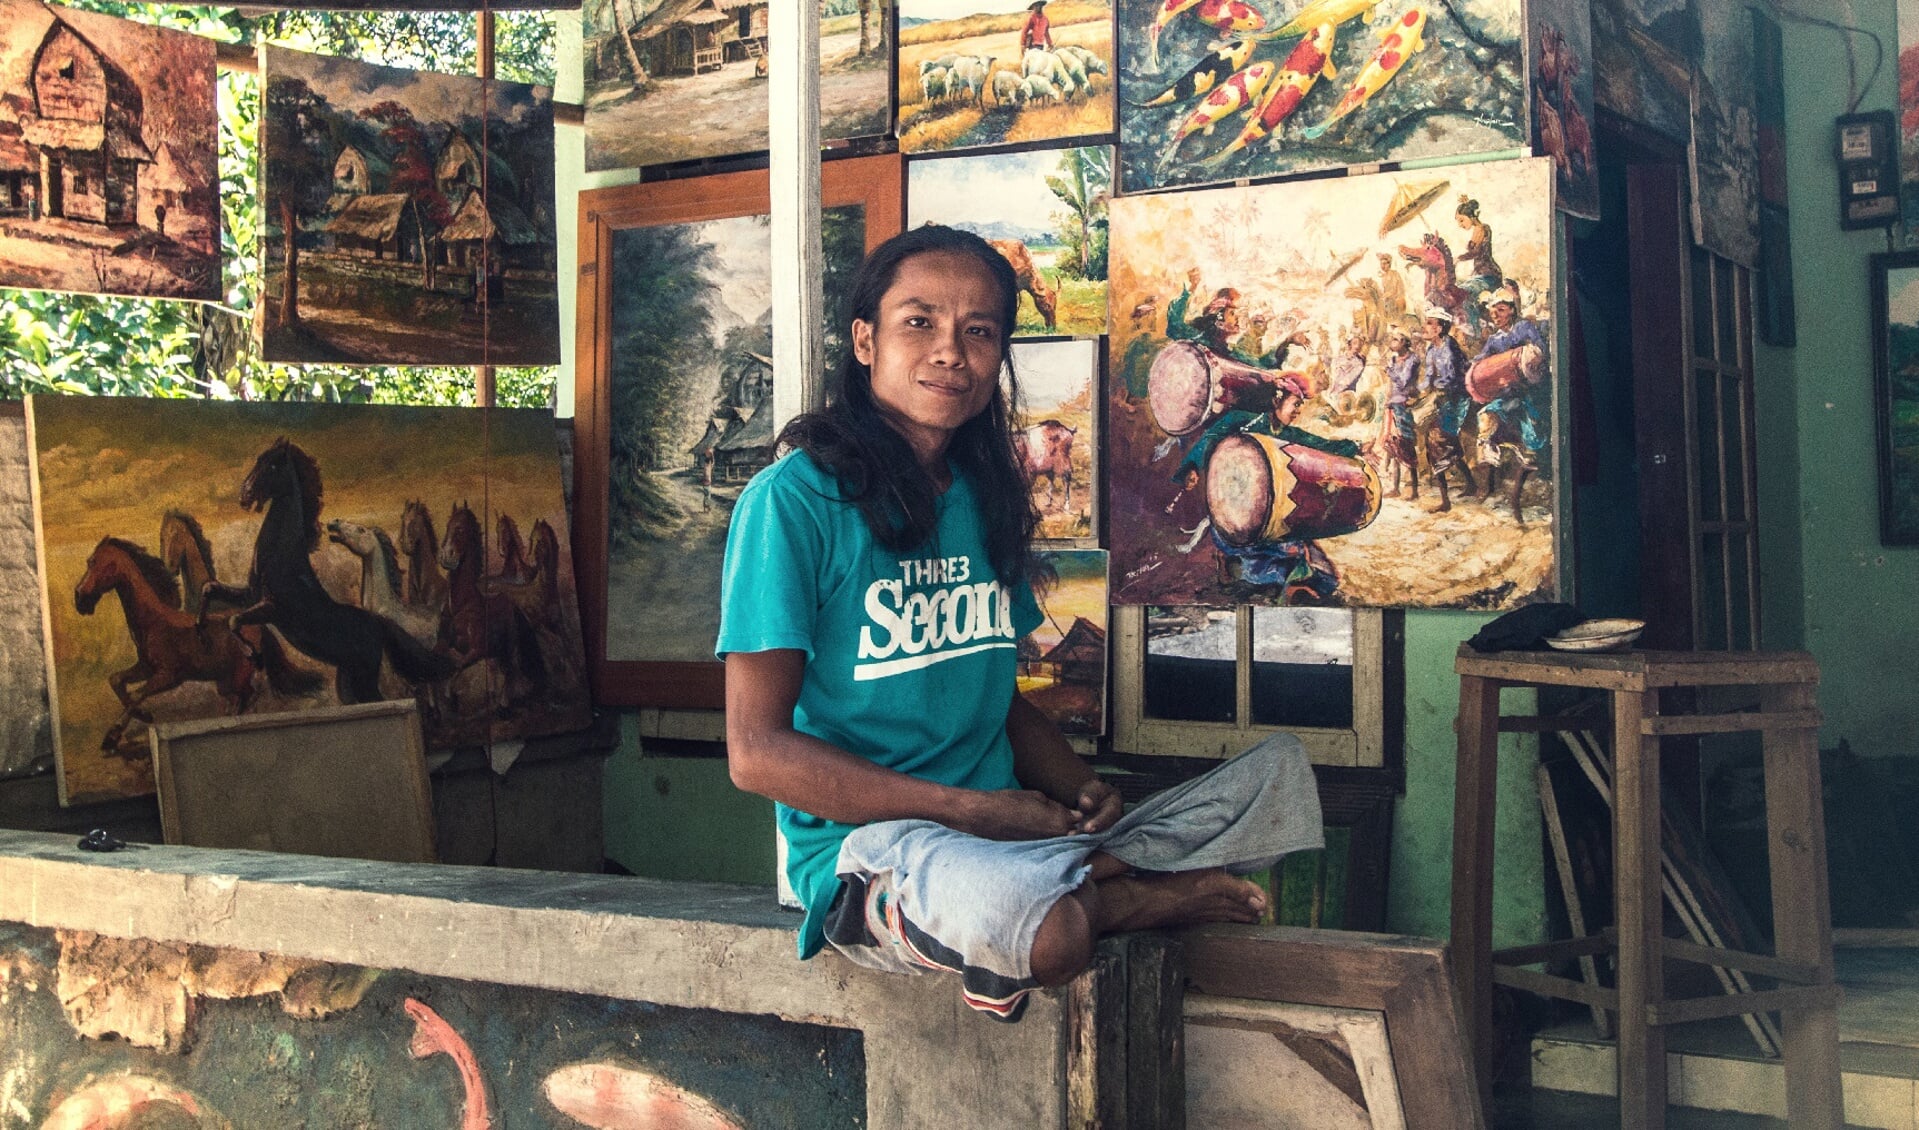 Nurlan is geholpen door Handi-Capable, een initiatief van Nick in Lombok. Foto: Nick Rensink